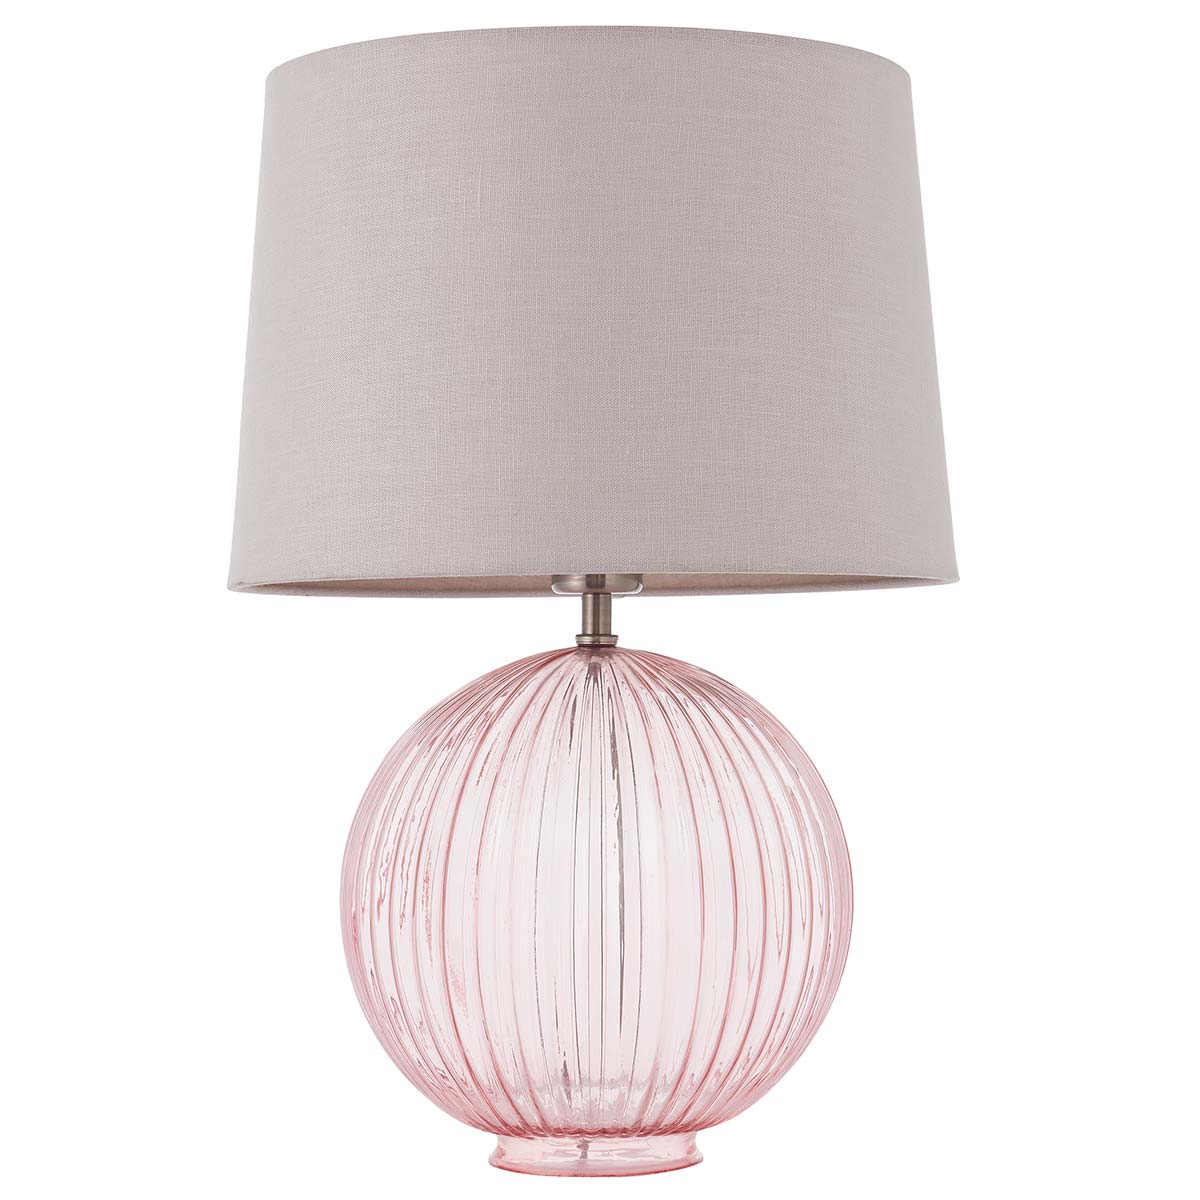 Jemma Ribbed Pink Glass Table Lamp Natural Linen Shade